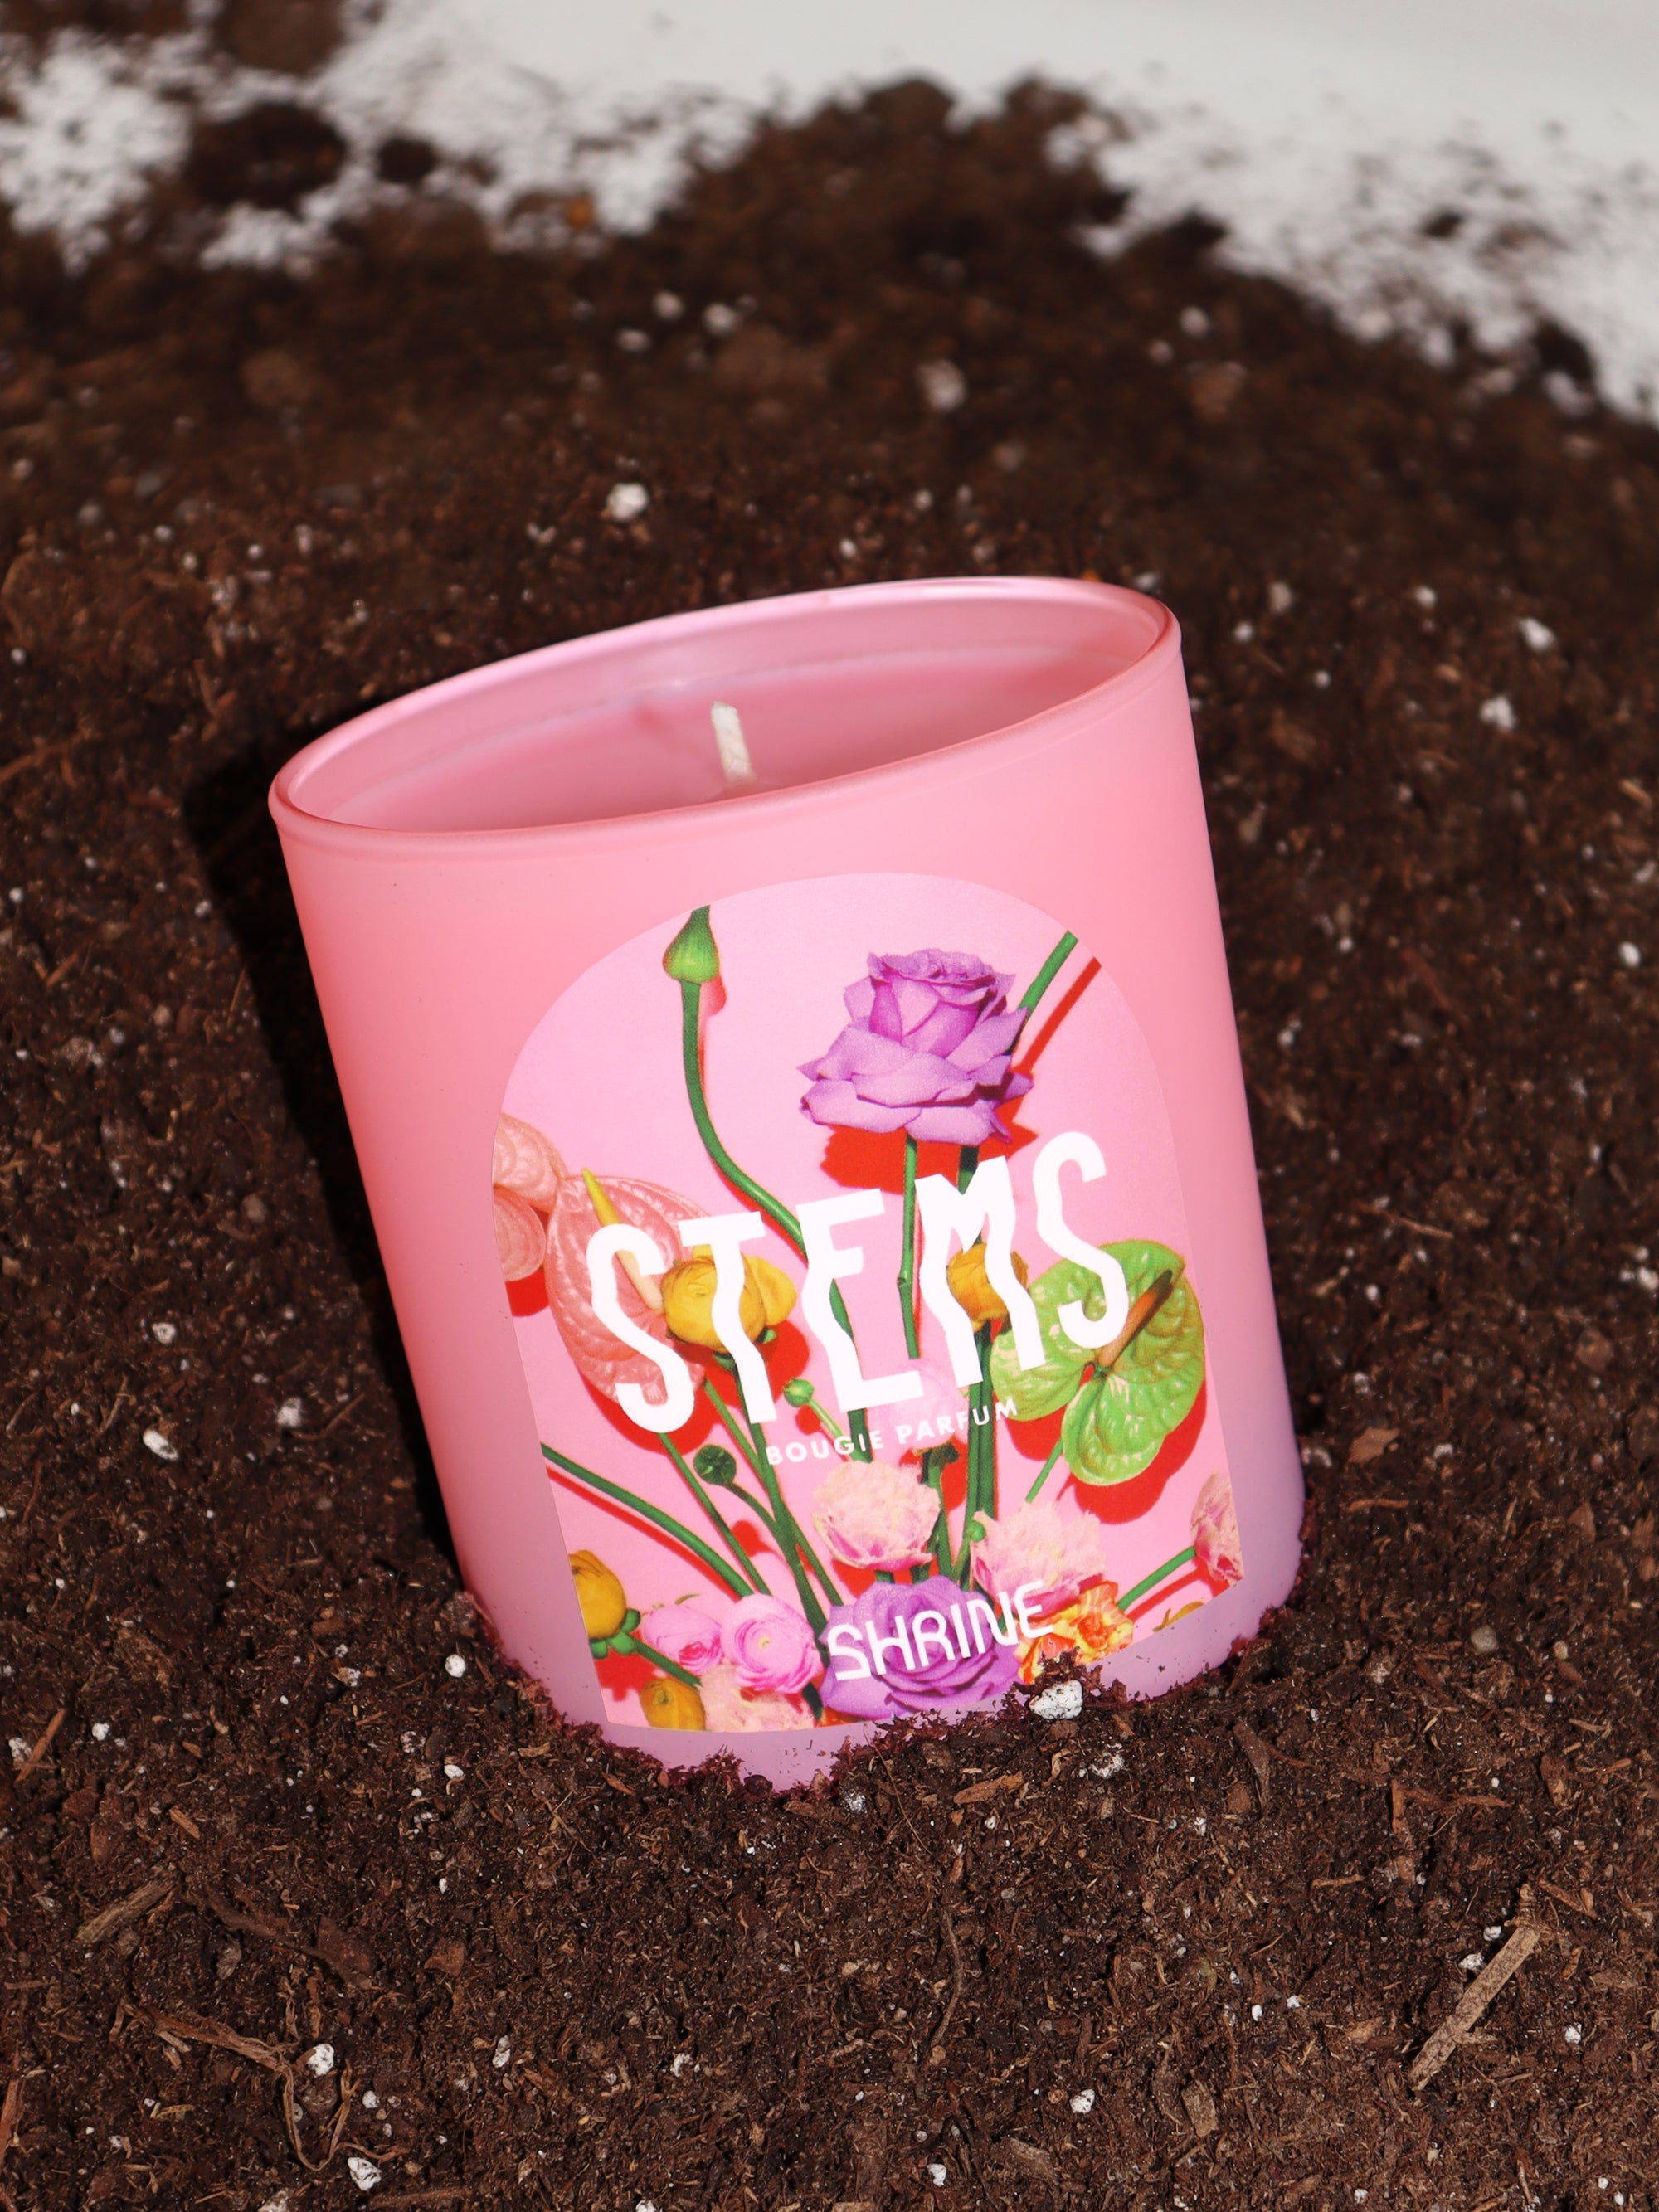 shrine stems pink floral flower candle in dirt shop shrine shopshrine